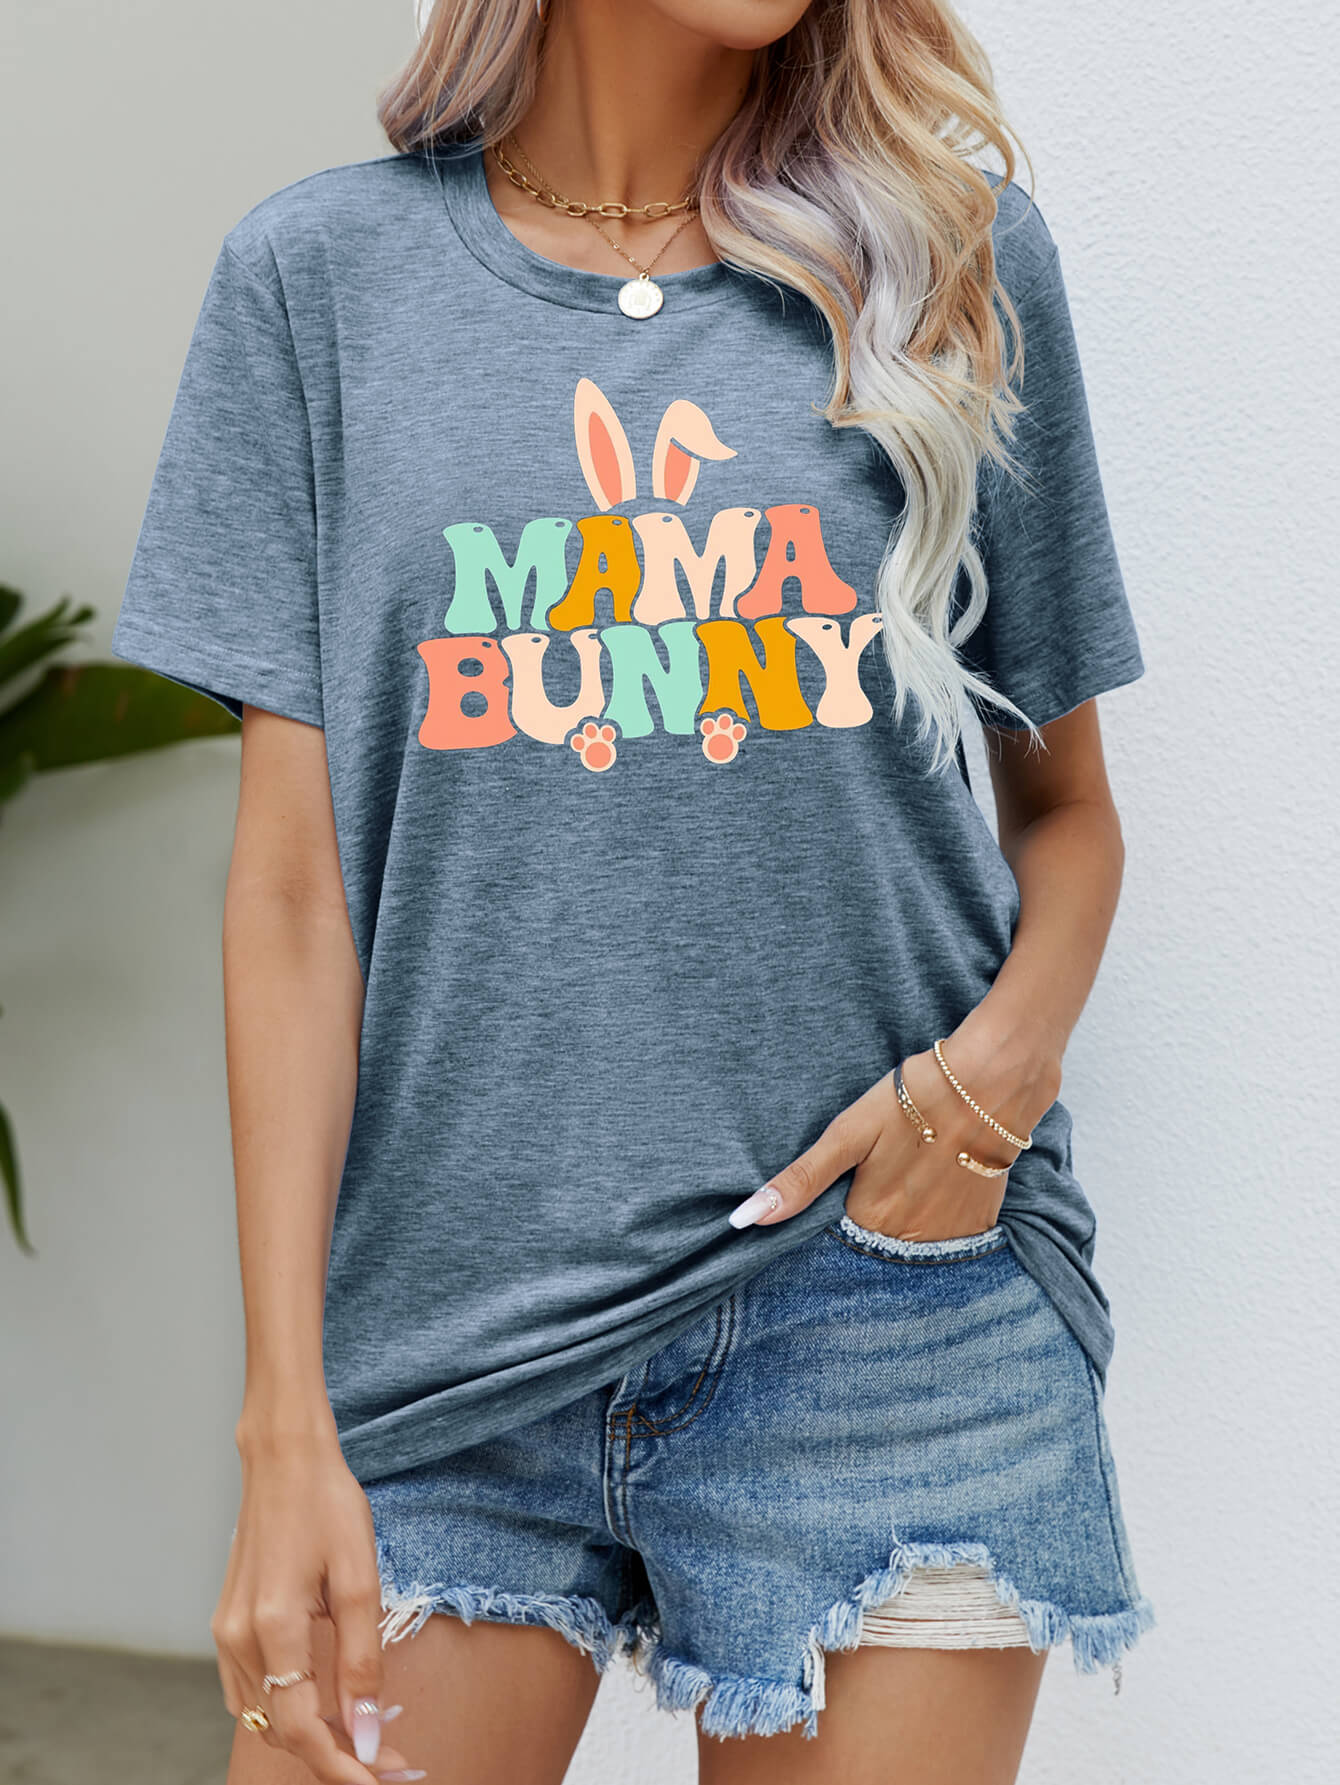 Easter MAMA BUNNY Tee Shirt